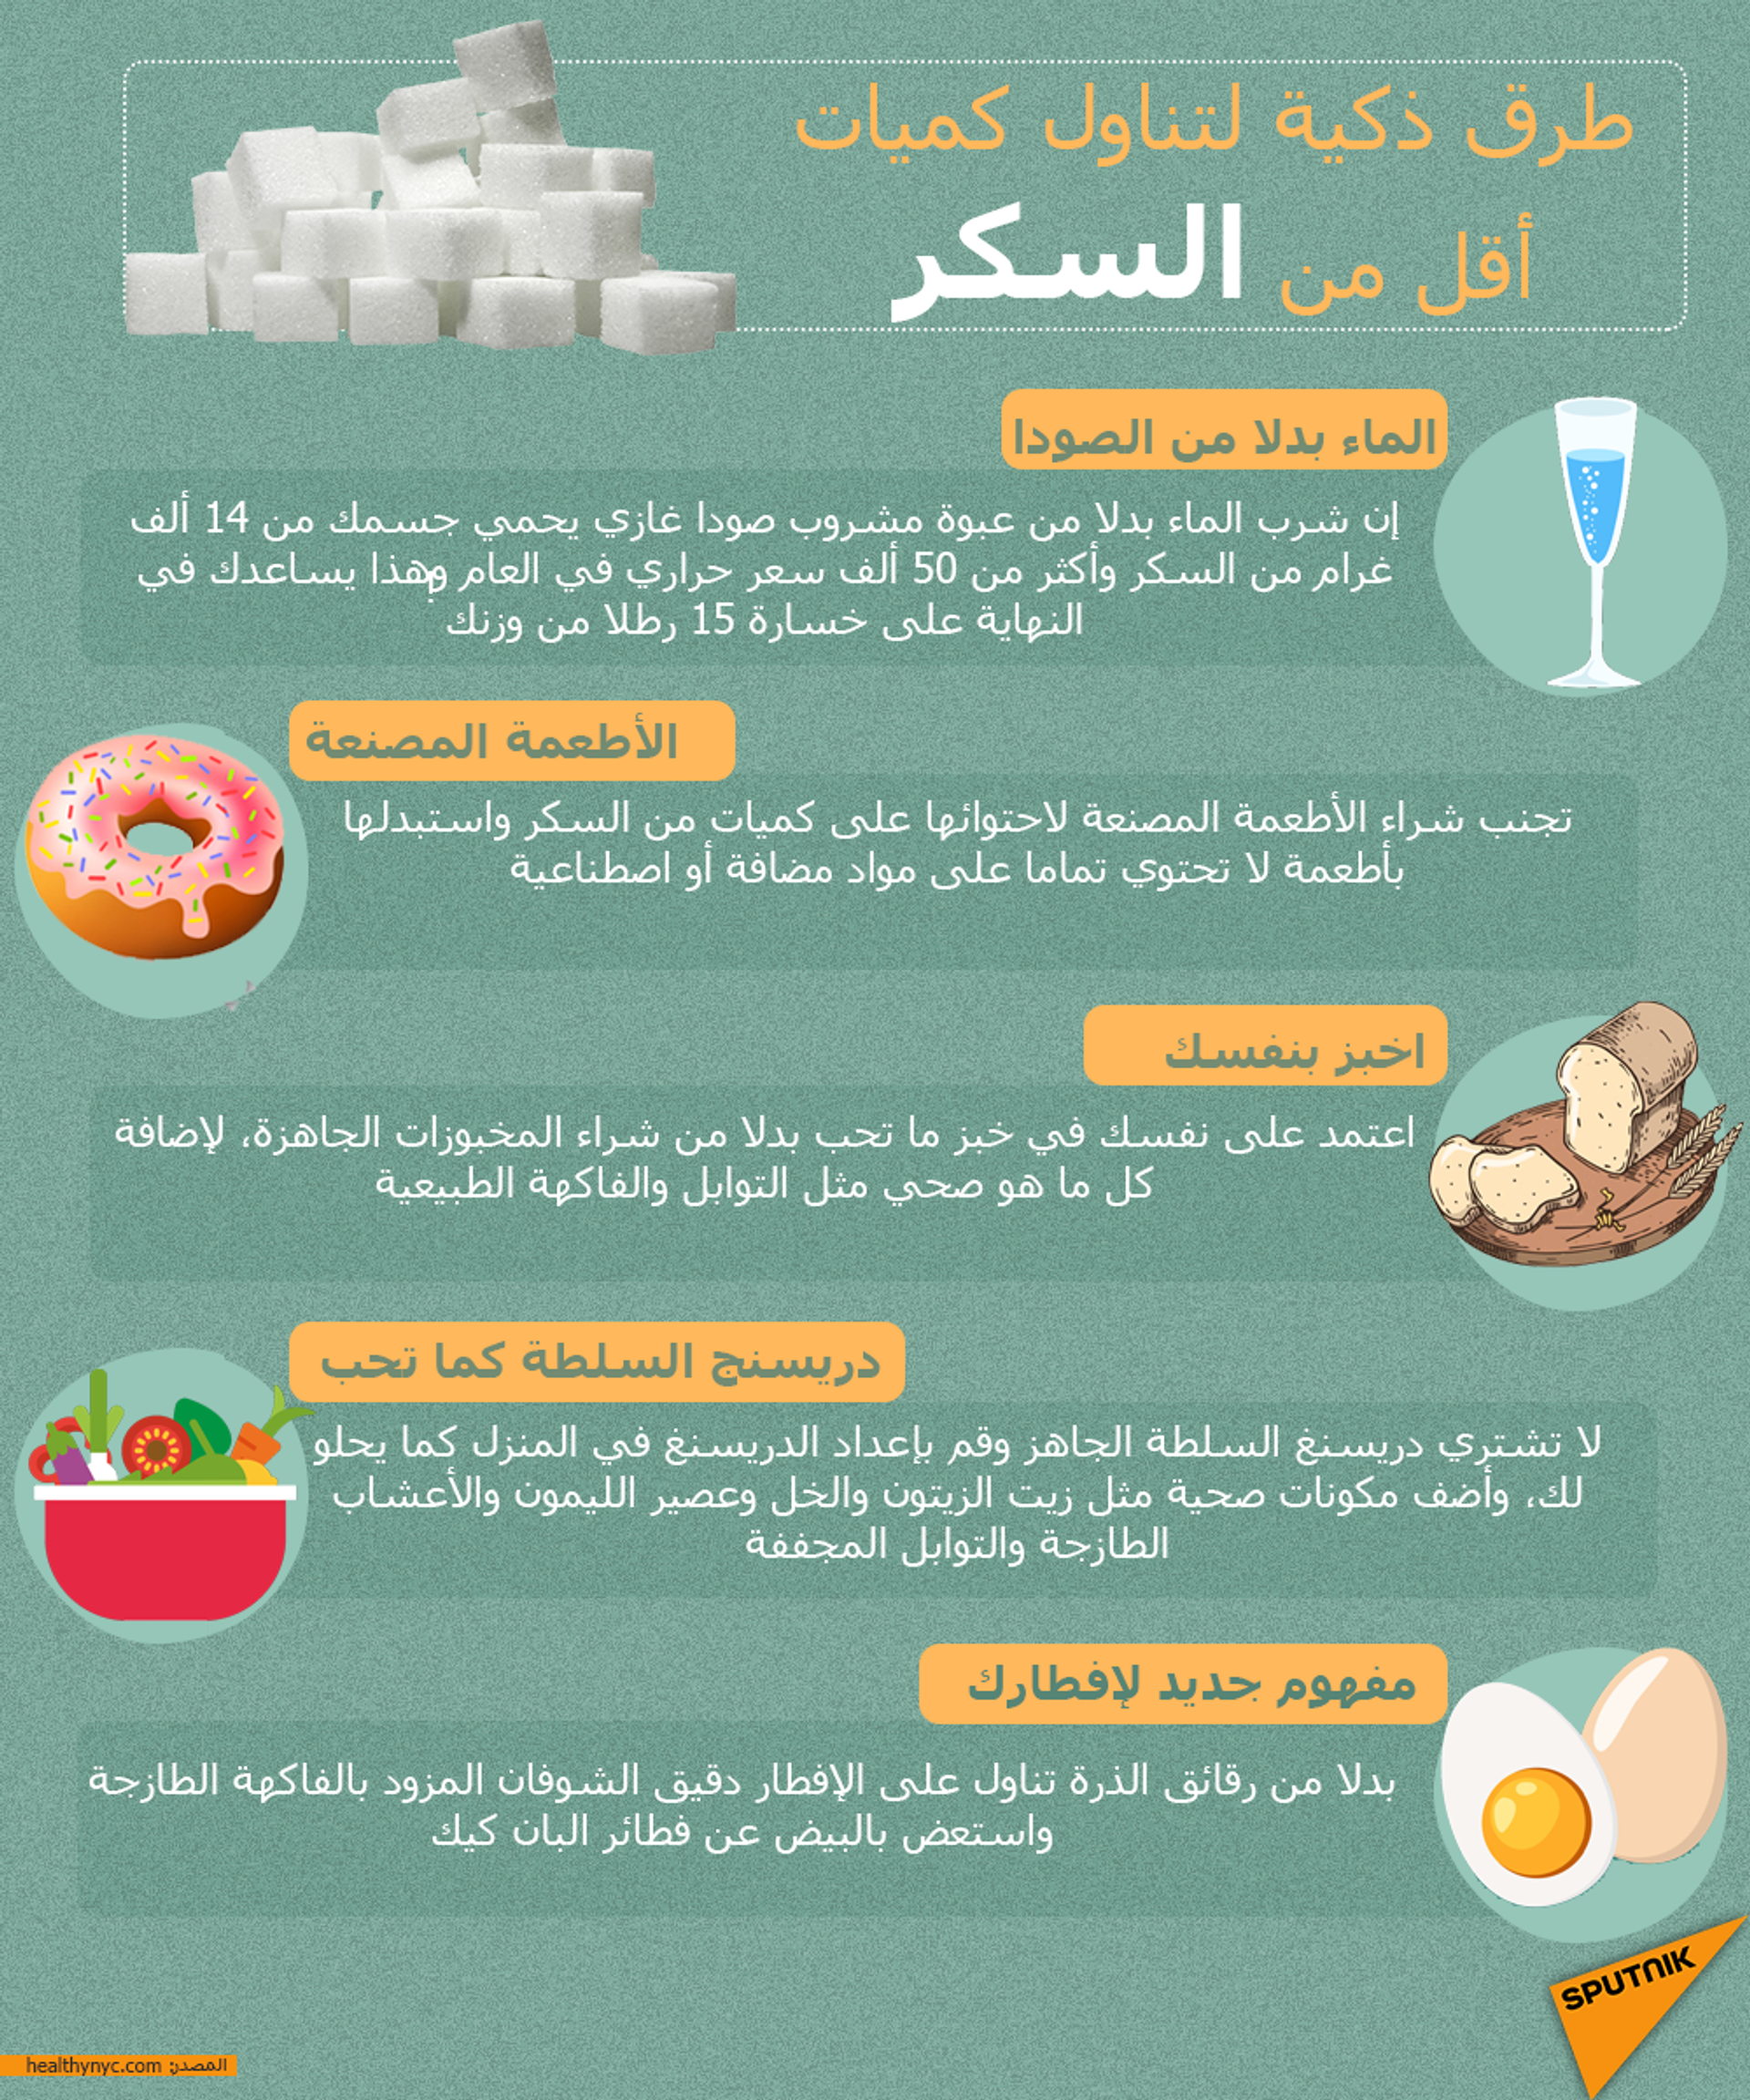 كم مرة يمكنك قياس السكر في رمضان؟ - سبوتنيك عربي, 1920, 17.04.2021